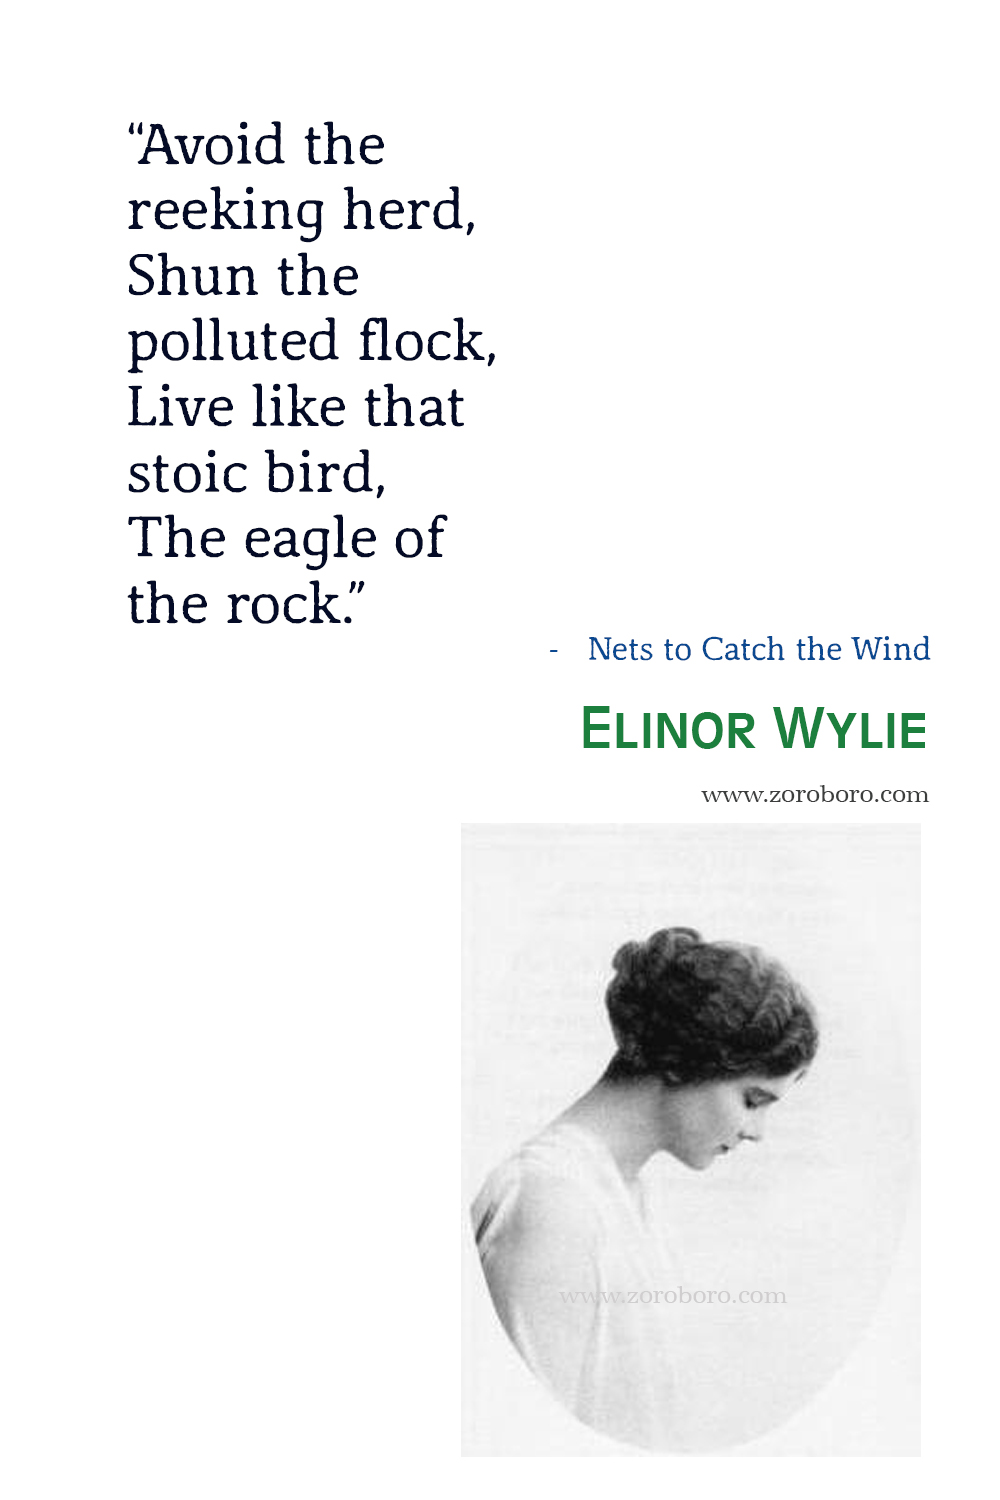 Elinor Wylie Quotes, Elinor Wylie Poet, Elinor Wylie Poetry, Elinor Wylie Poems, Elinor Wylie Books Quotes, Elinor Wylie : Selected Poems